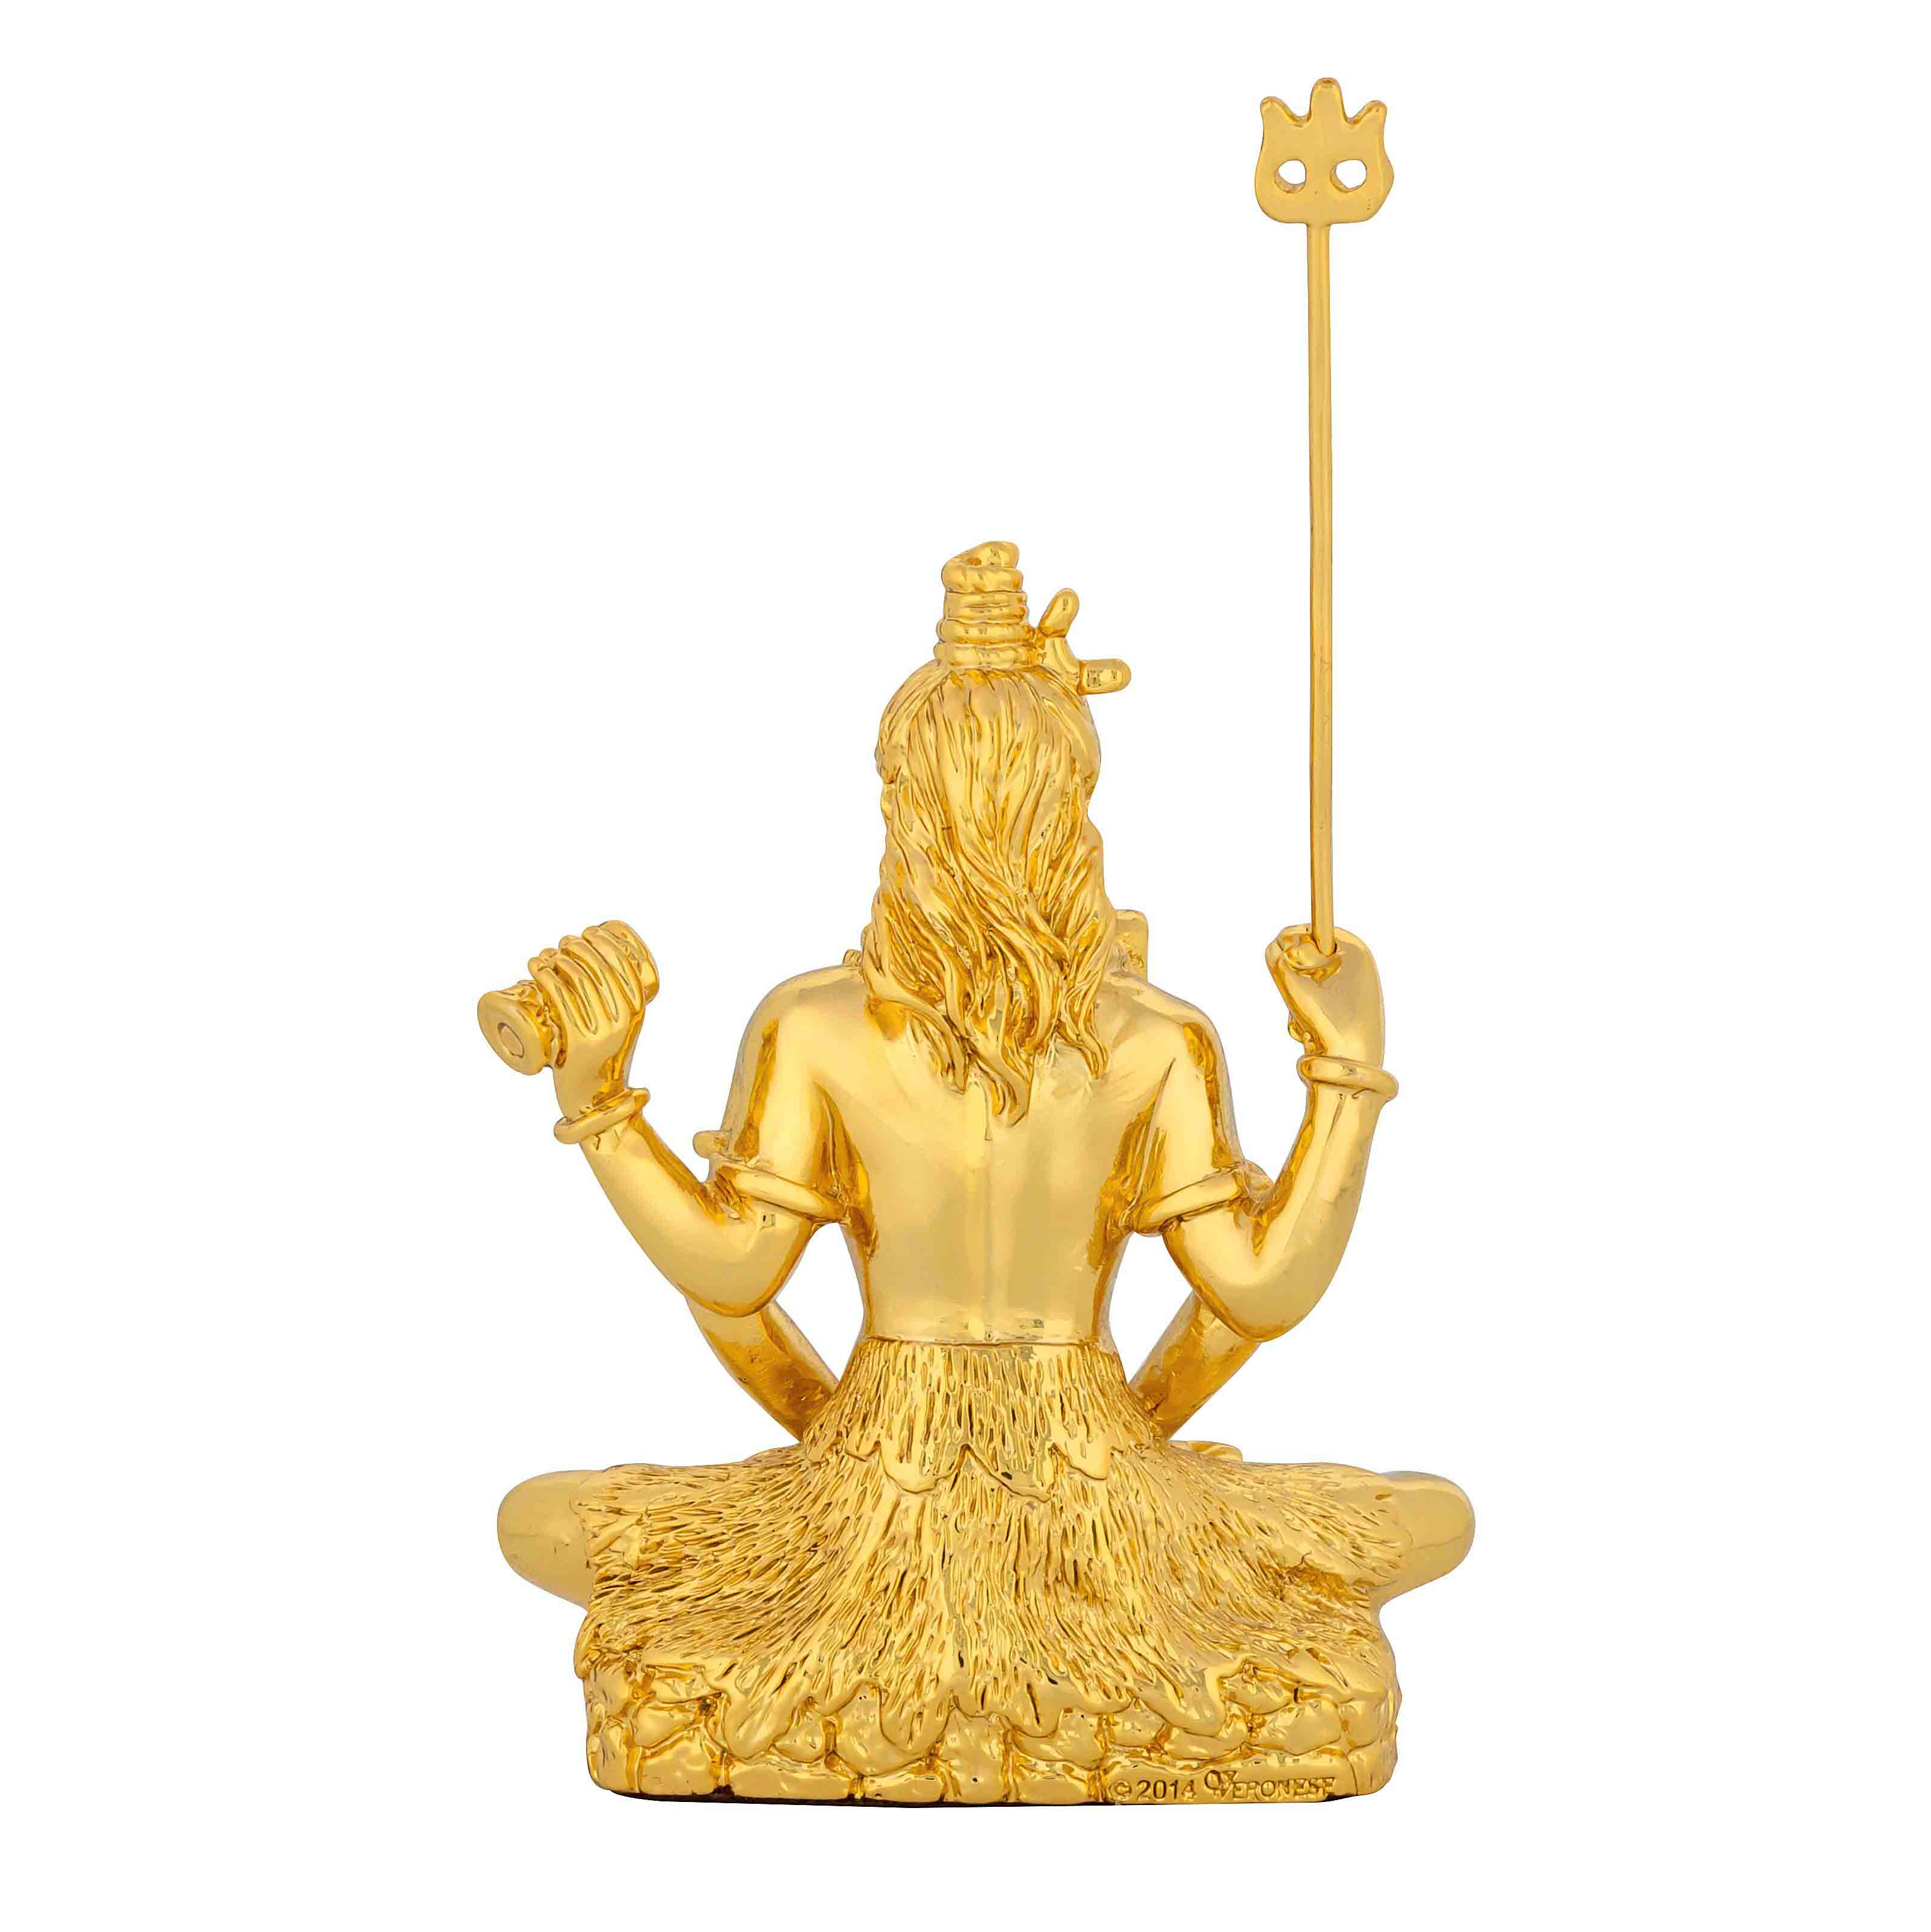 Lord Shiva Idol PIDRGS13-052